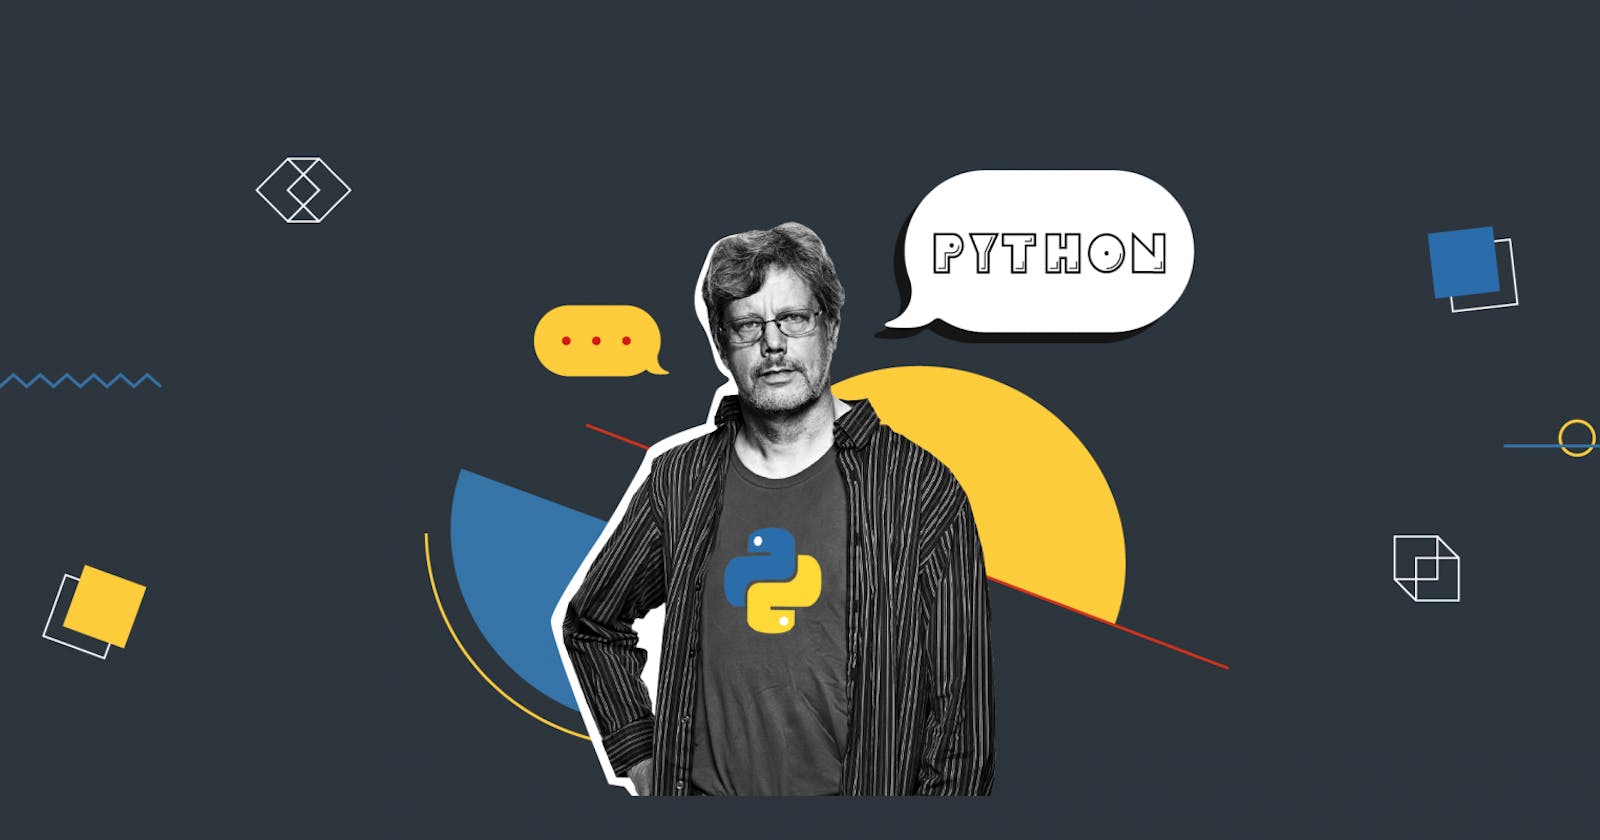 1.2 History of Python